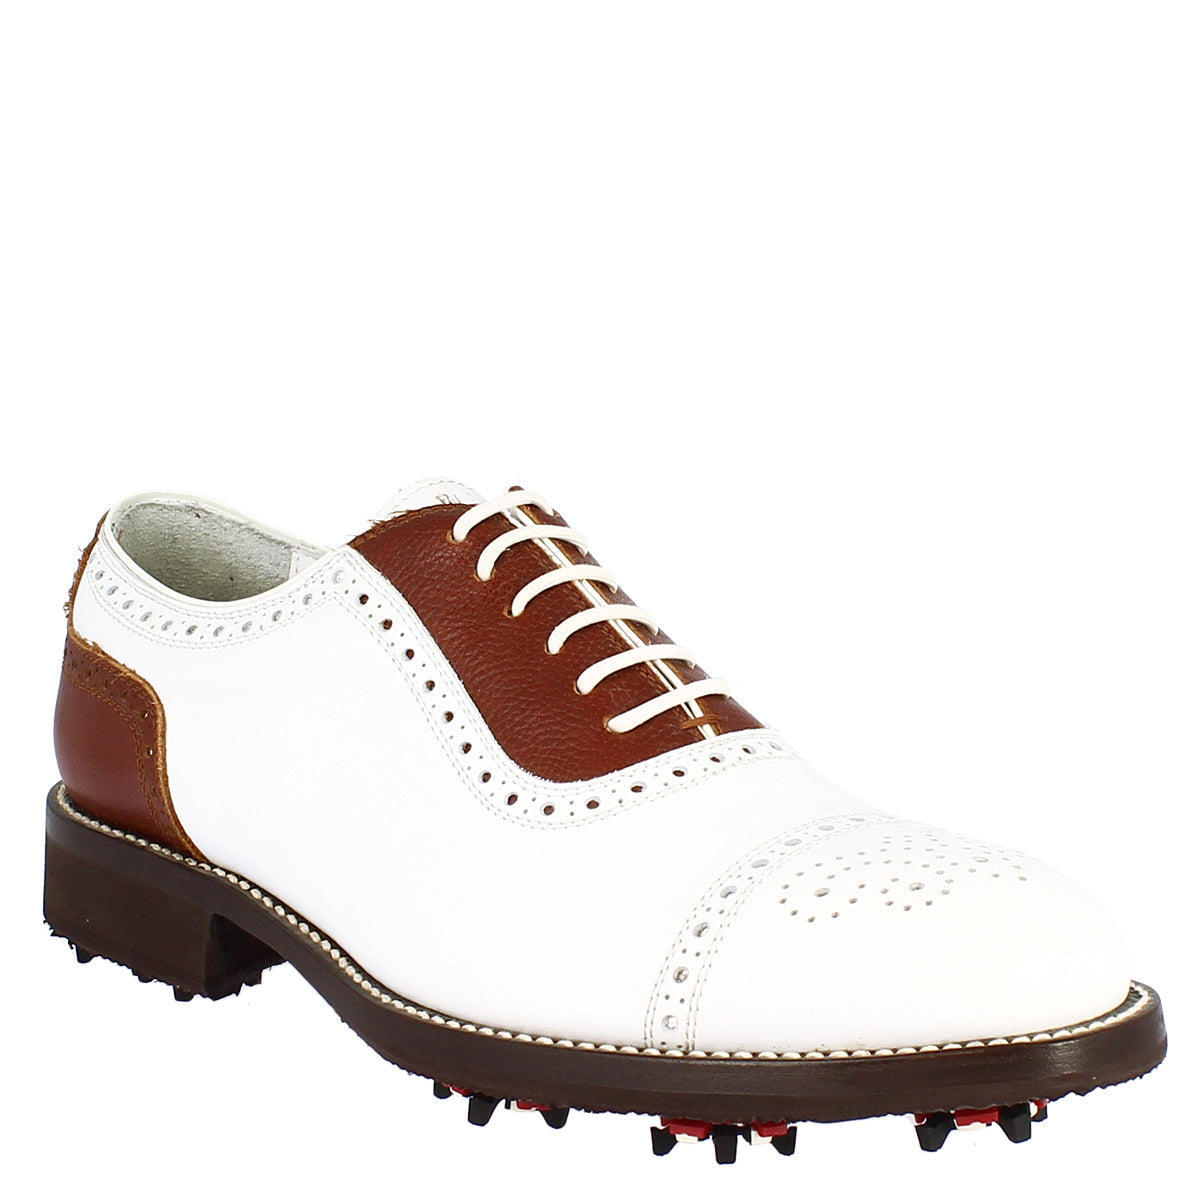 Handgefertigte klassische Damen-Golfschuhe aus weiß-braunem Leder